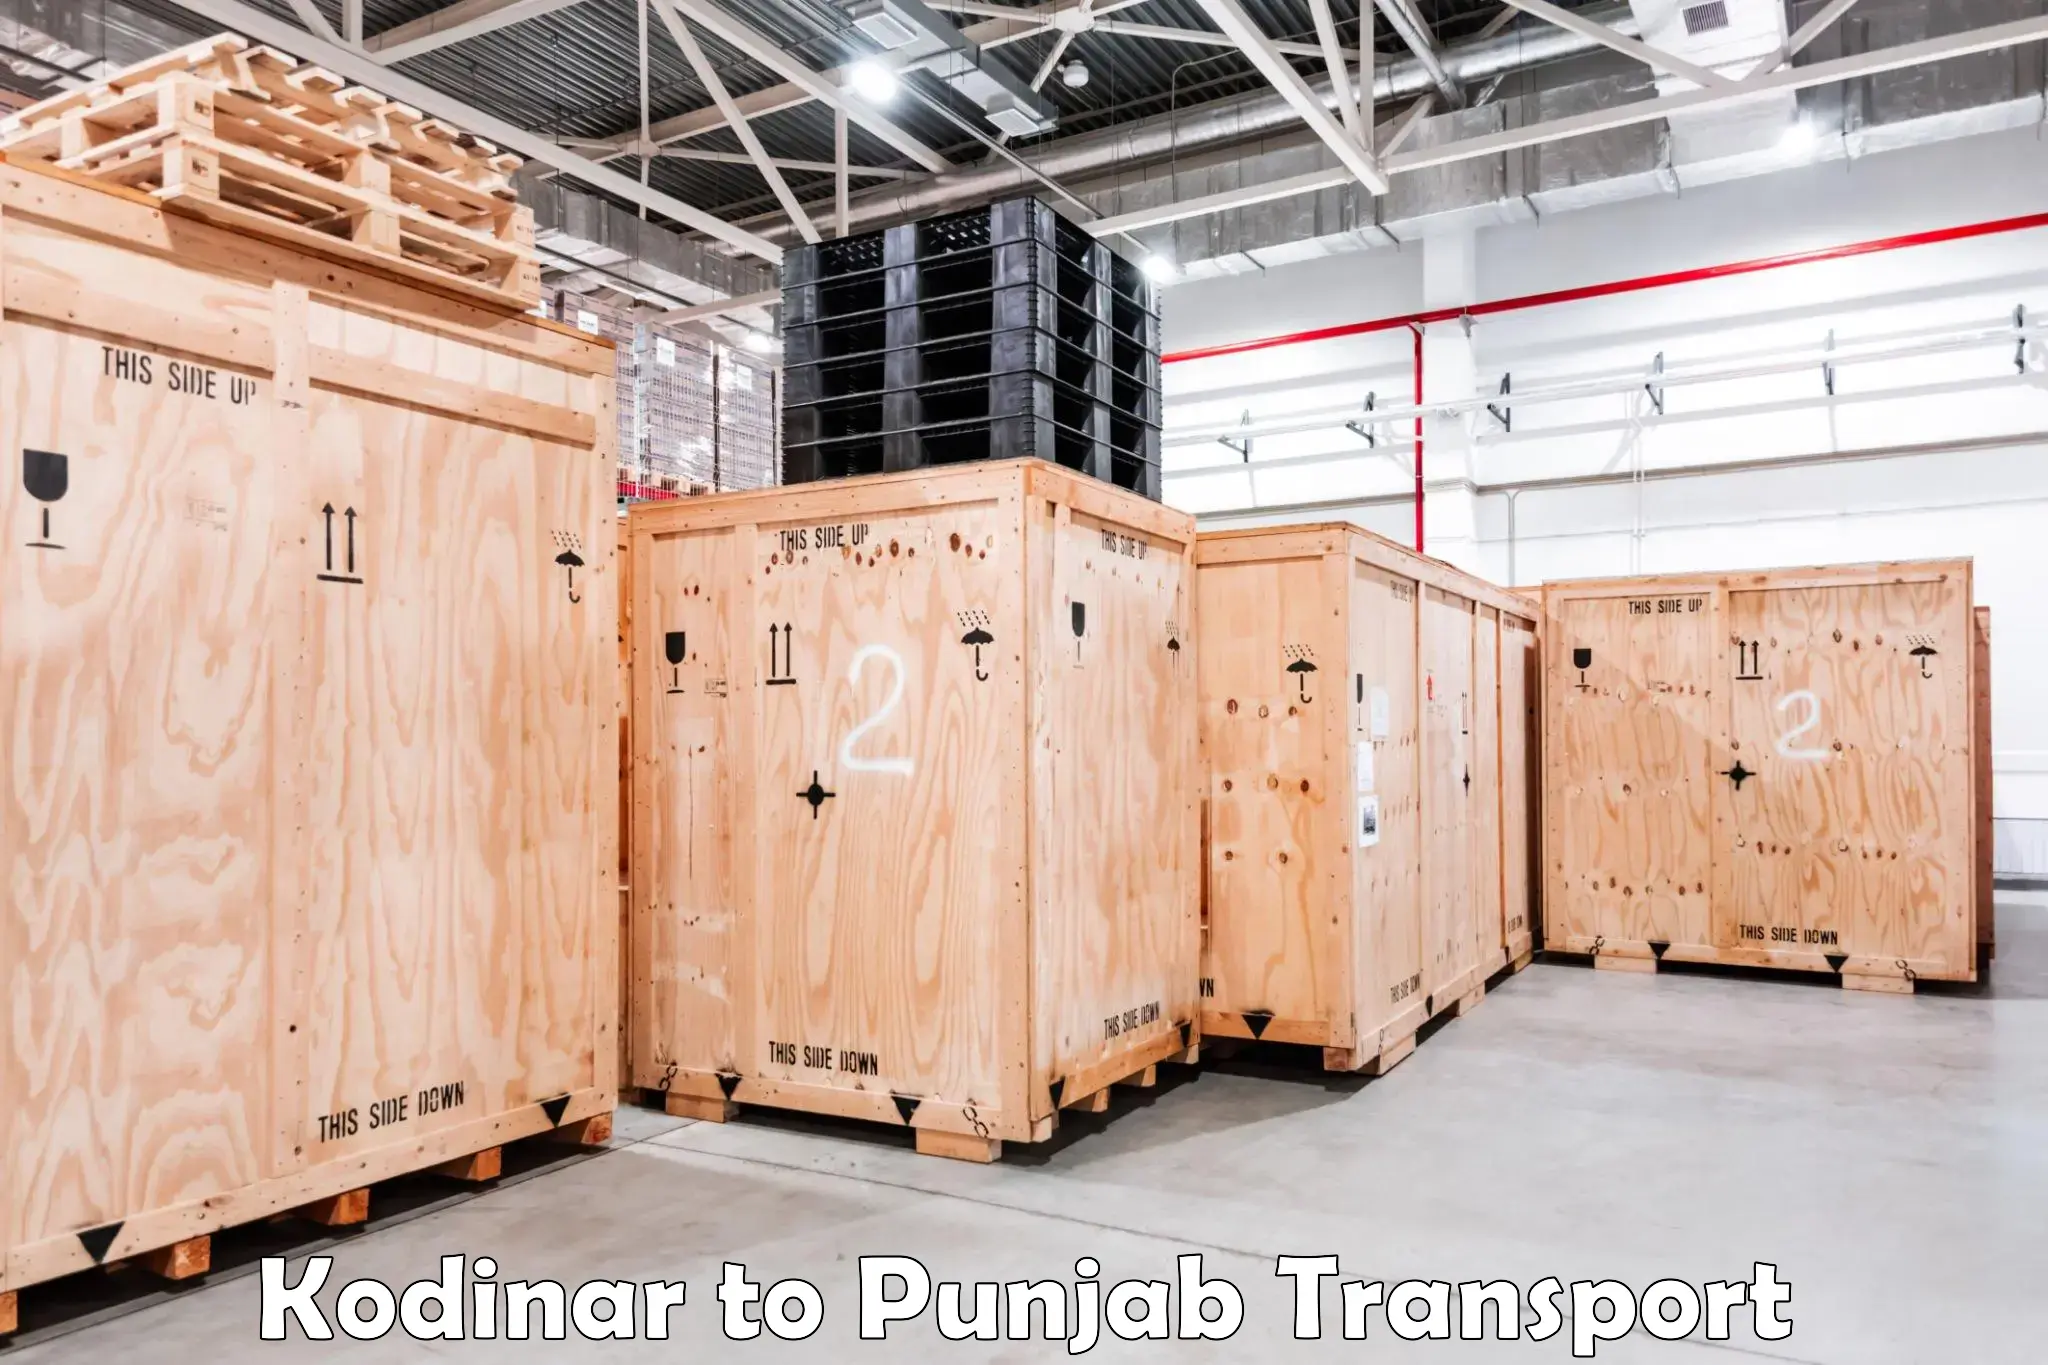 Daily parcel service transport Kodinar to Khanna